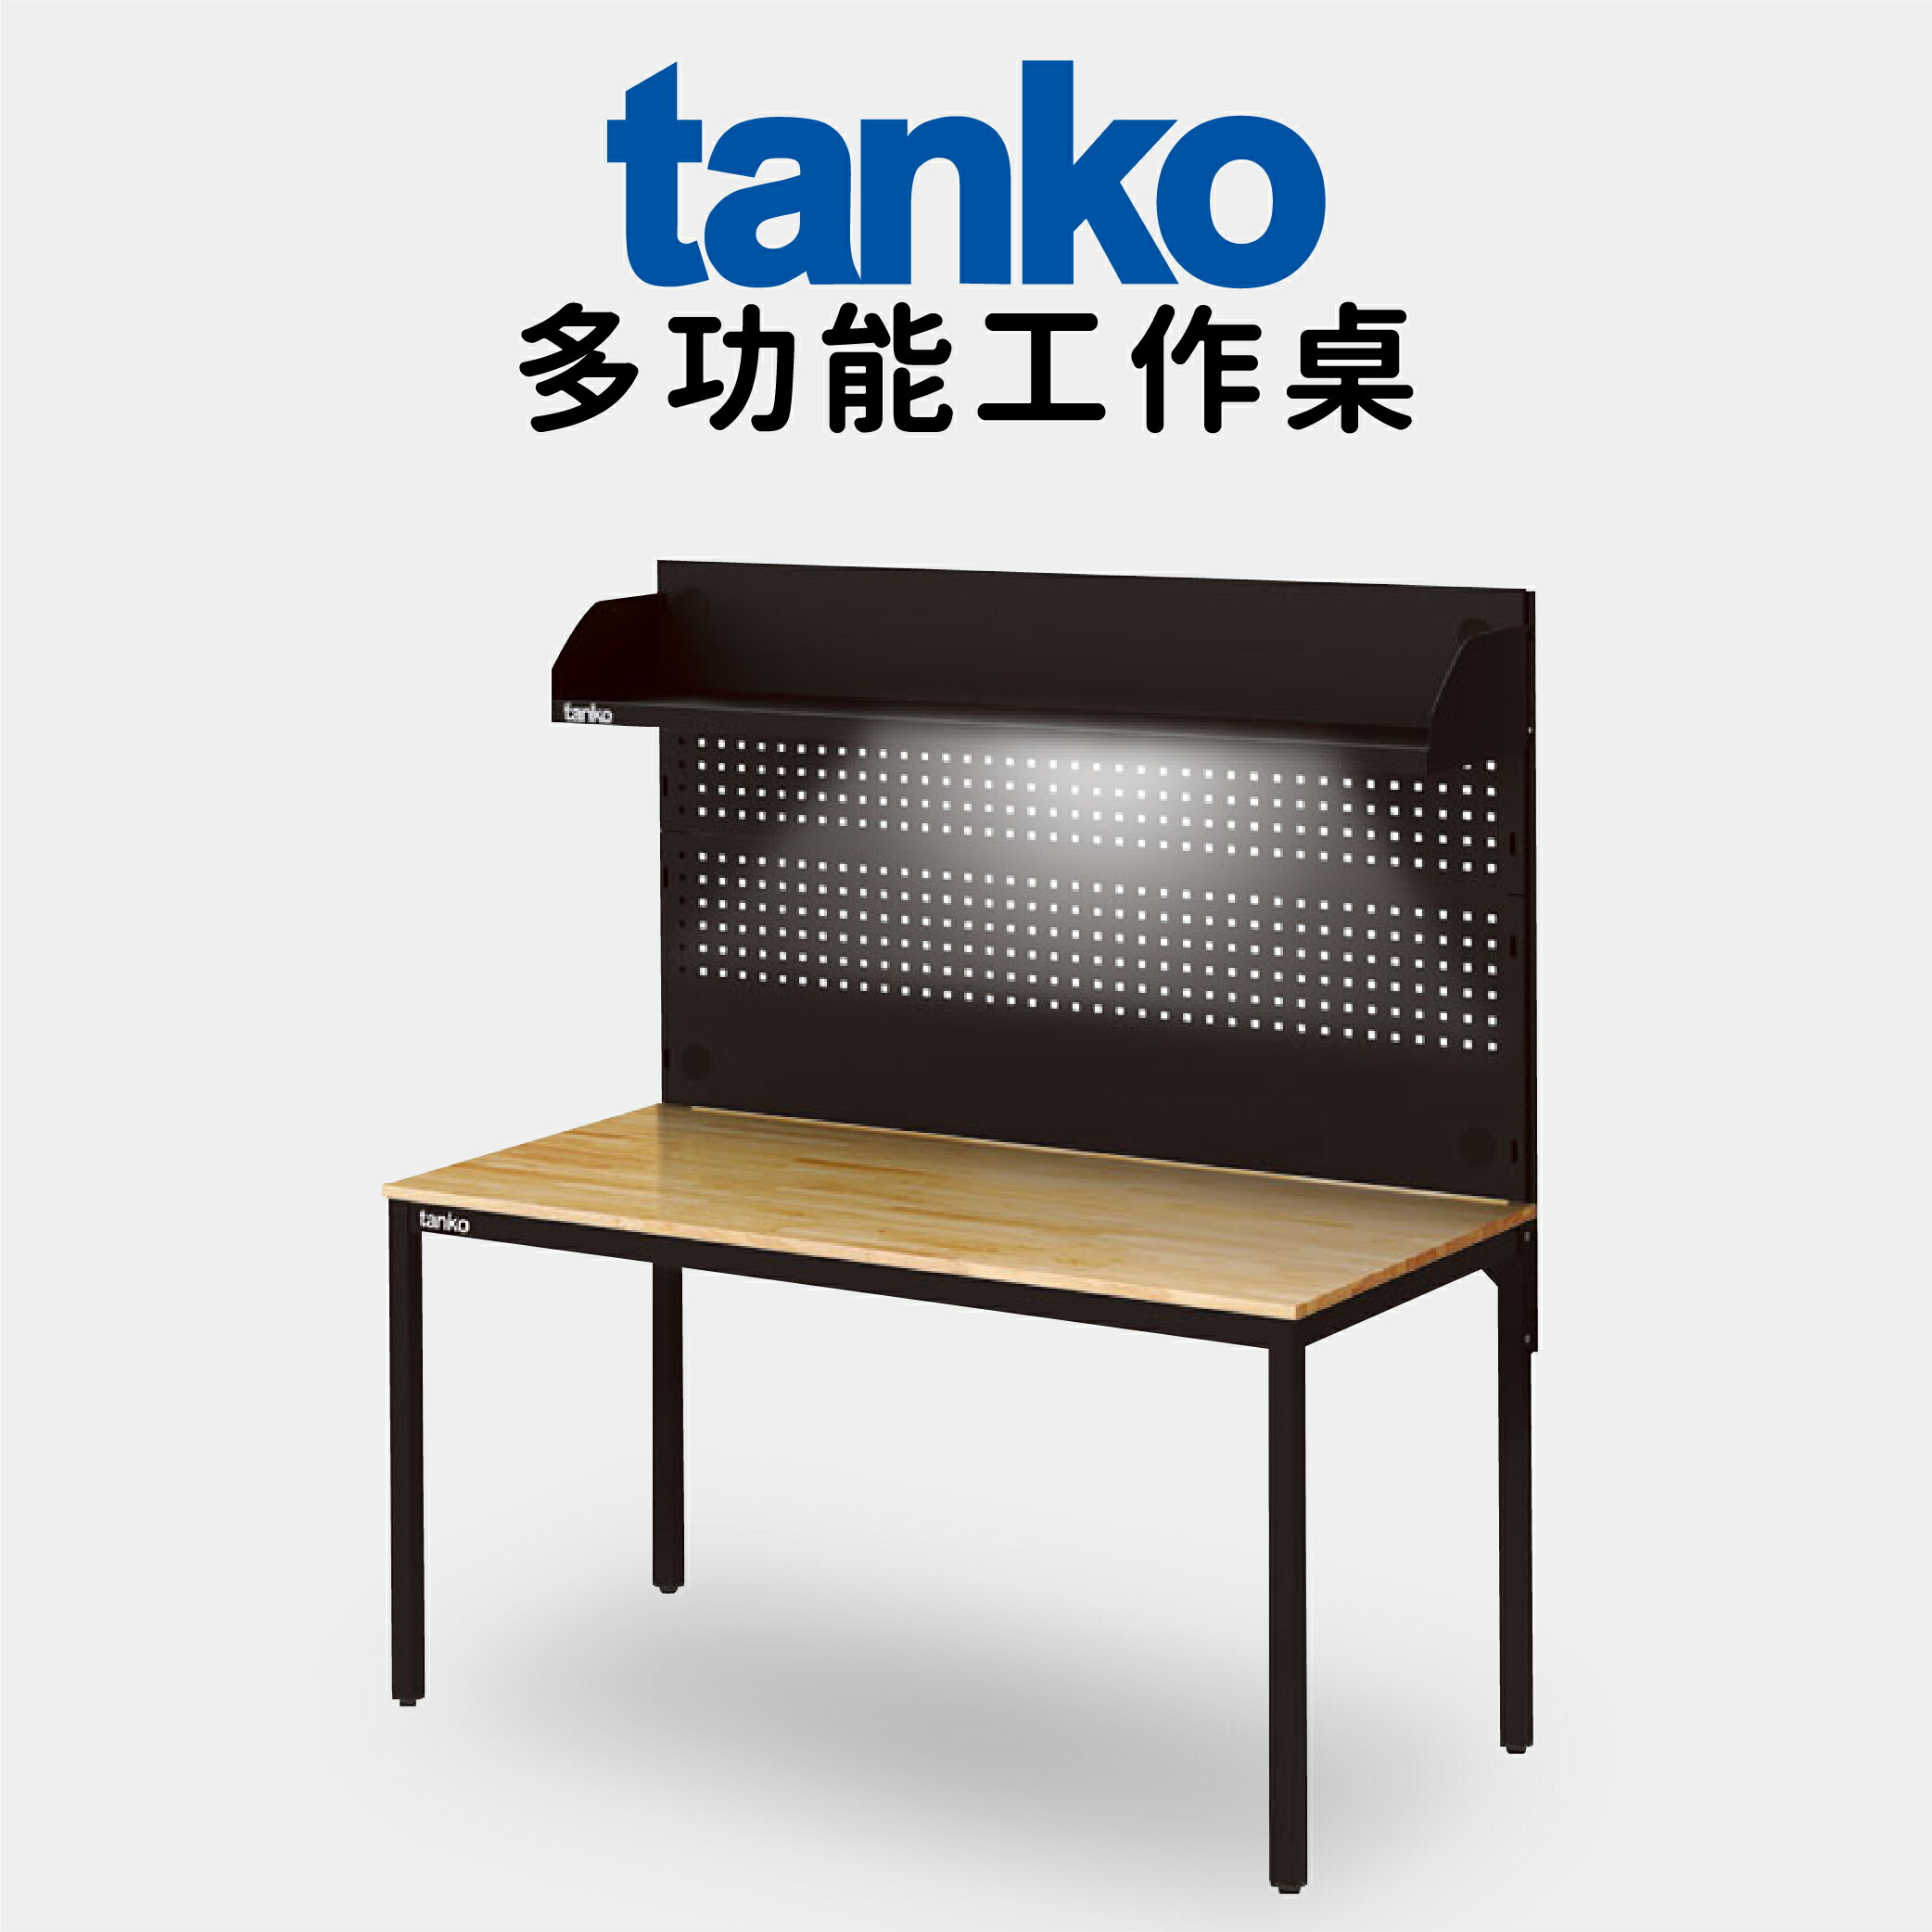 【天鋼 tanko】多功能工作桌 【WE-58W5】電腦桌 書桌 多用途桌 工廠專用